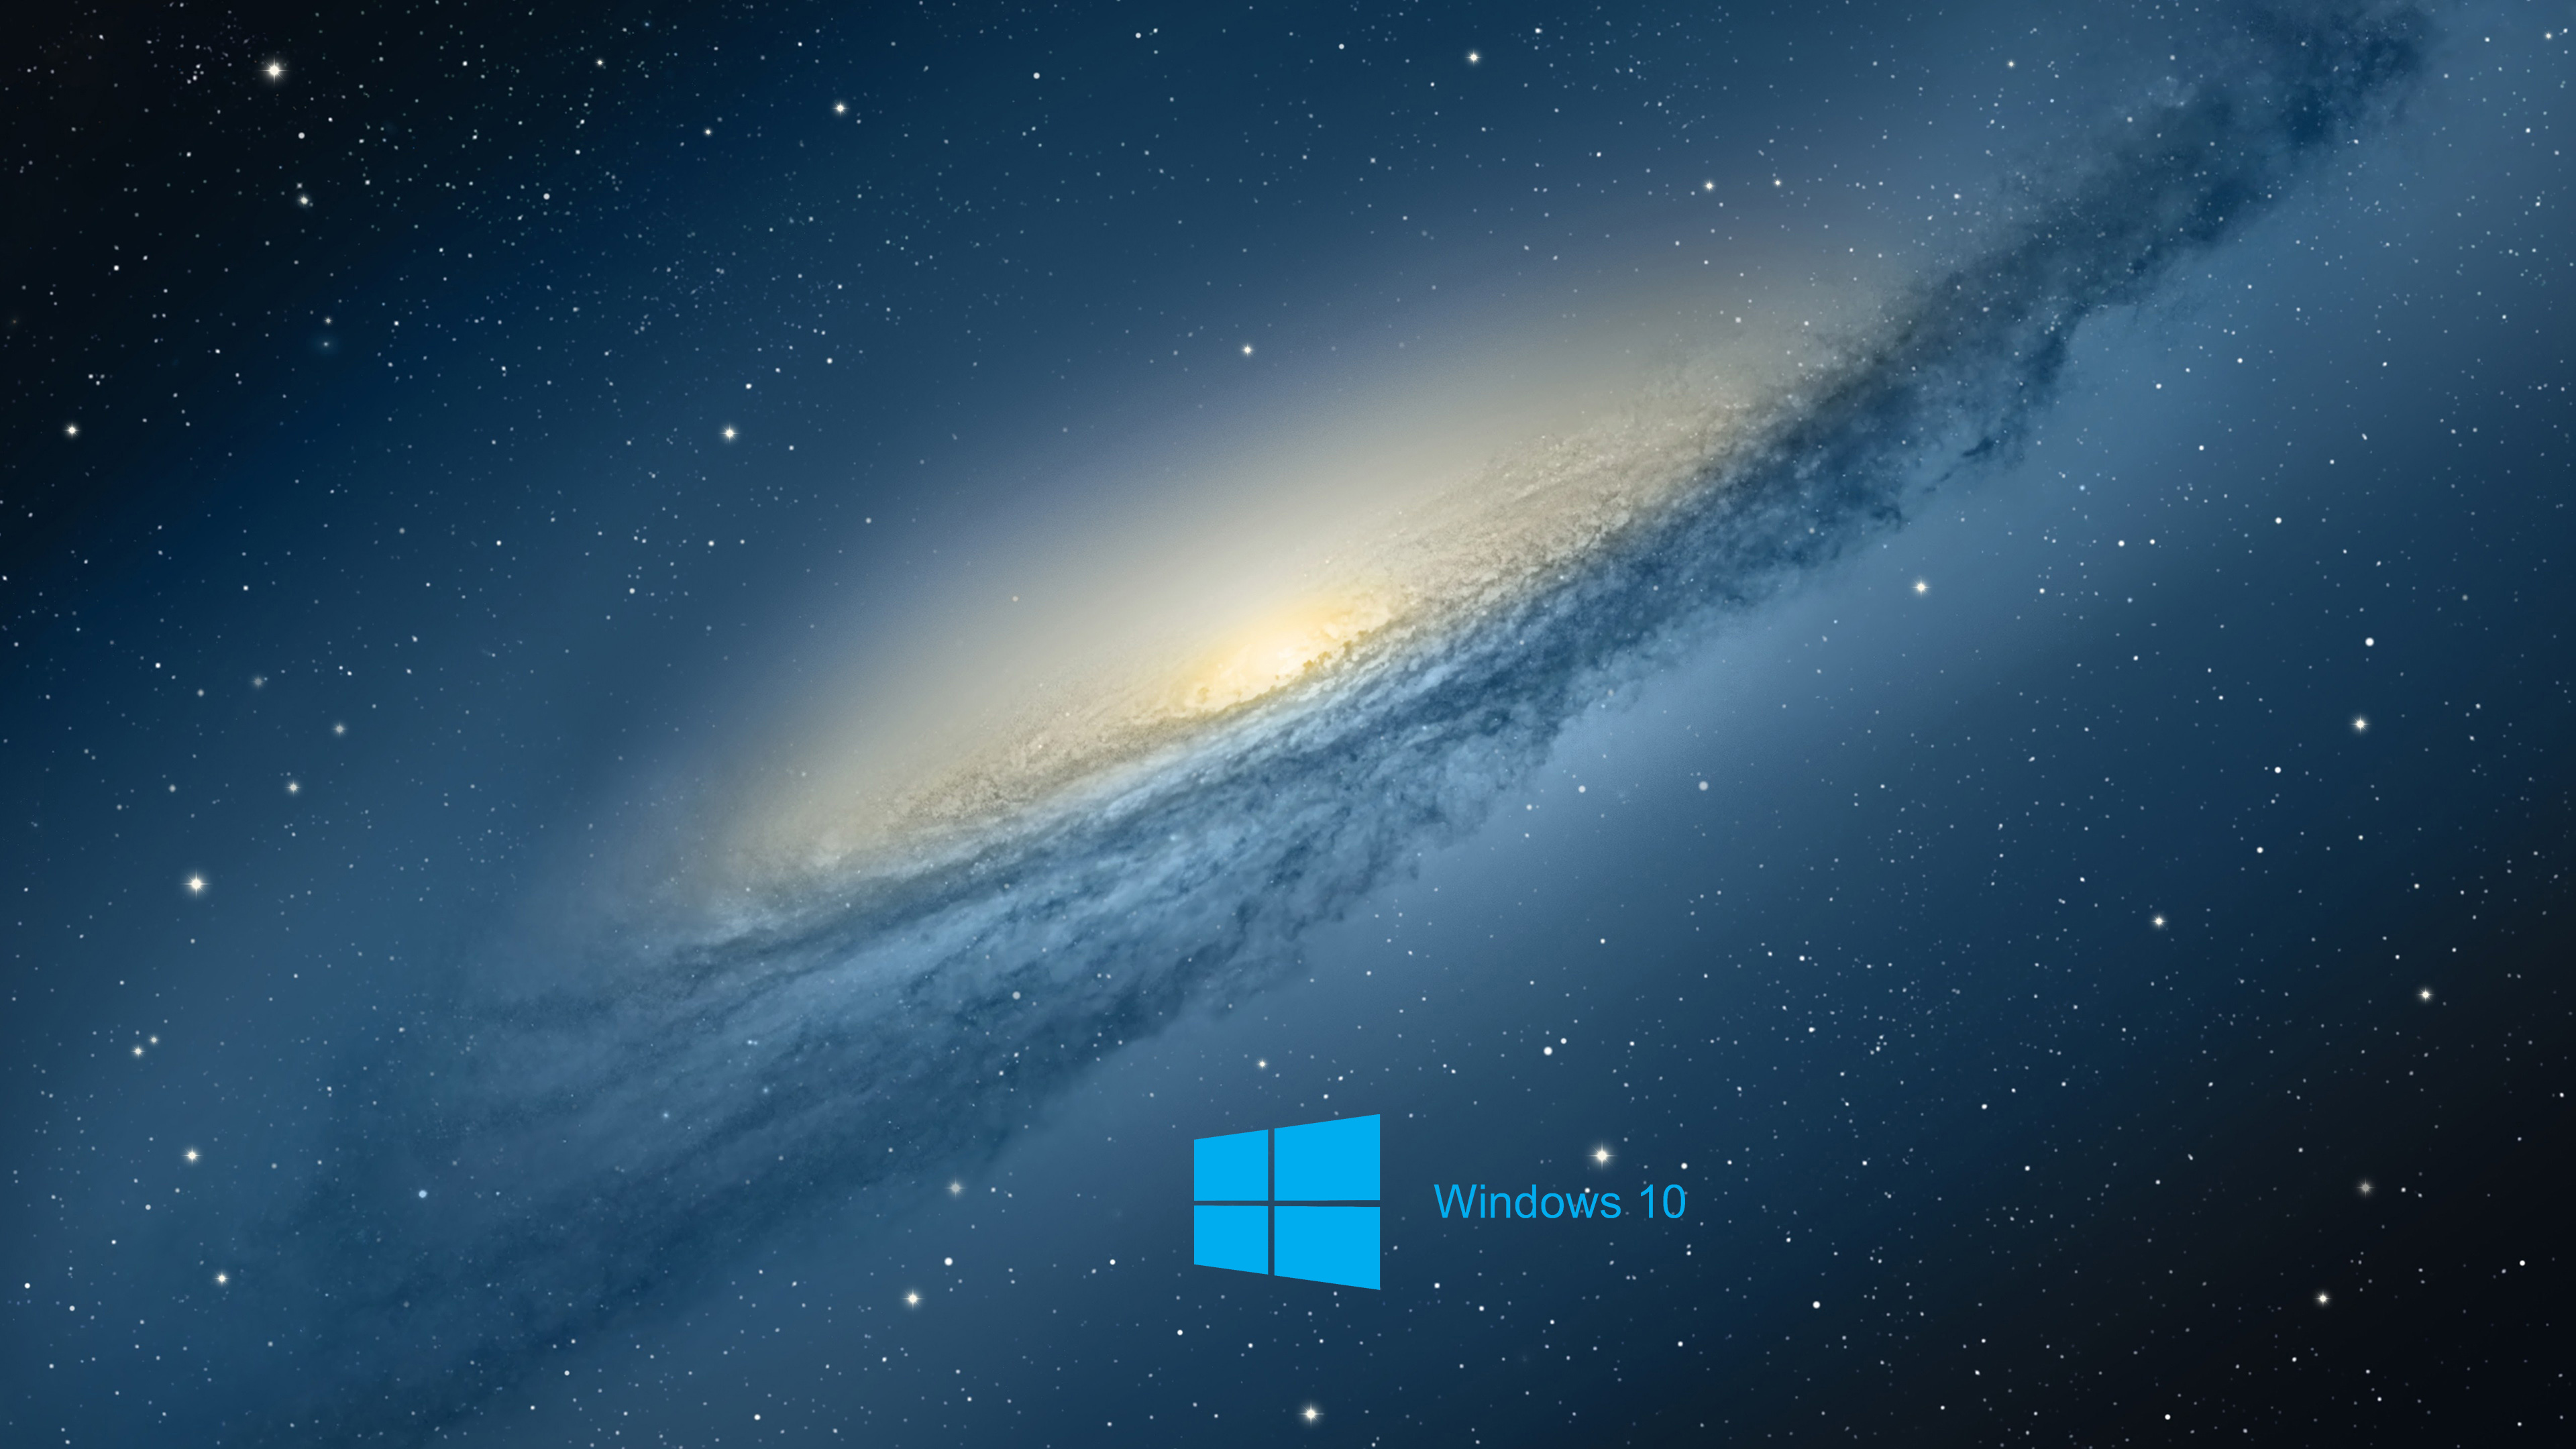  Laptop  HD  Wallpapers  For Windows  10  PixelsTalk Net